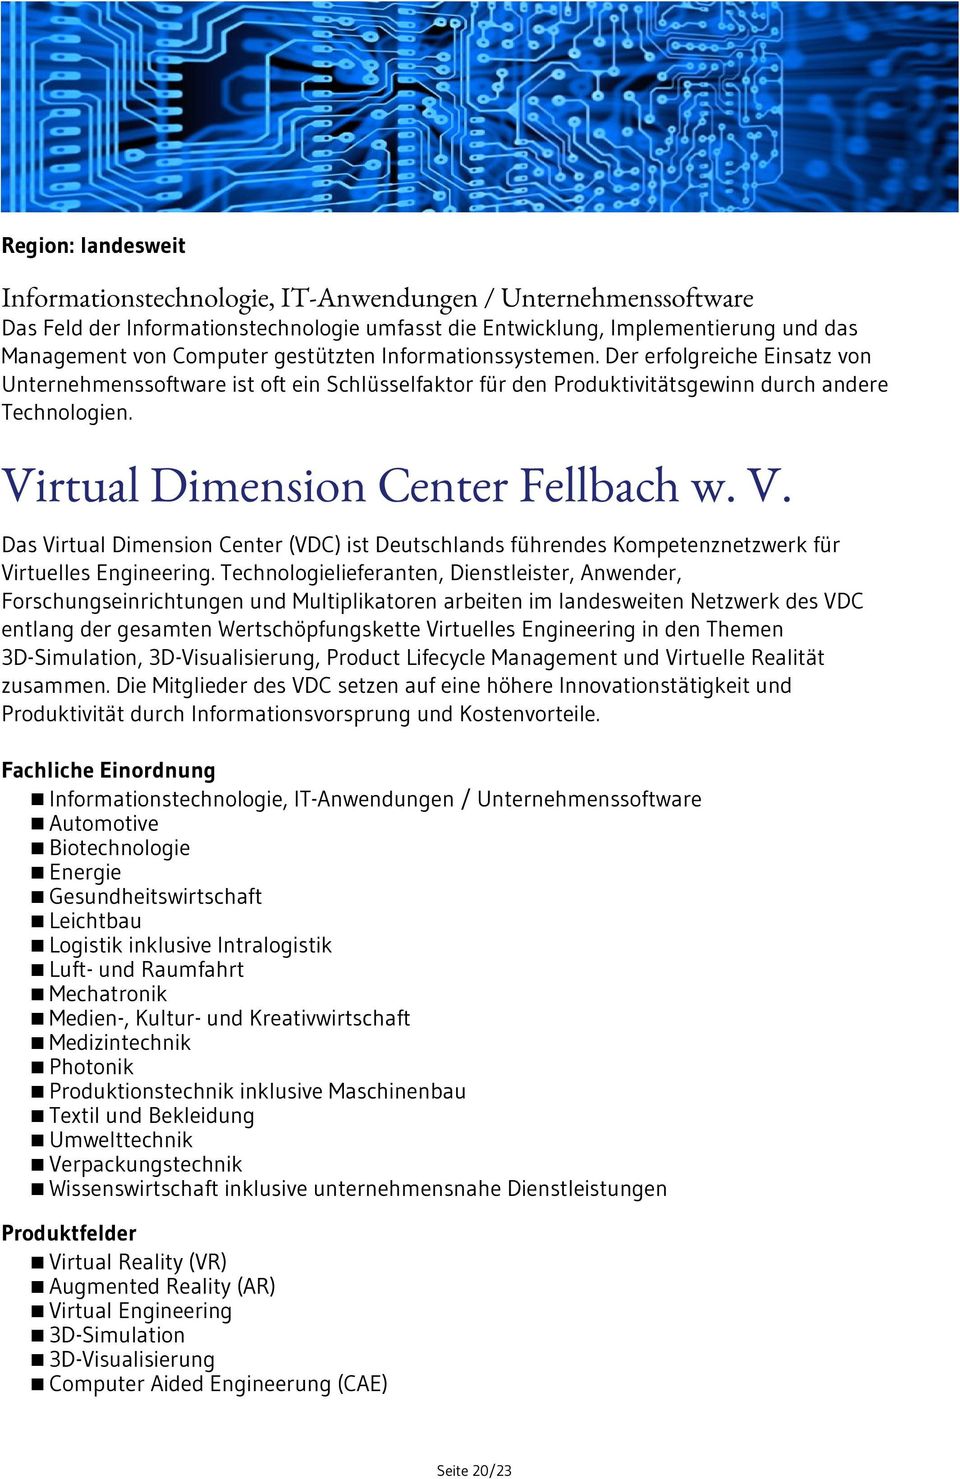 Virtual Dimension Center Fellbach w. V. Das Virtual Dimension Center (VDC) ist Deutschlands führendes Kompetenznetzwerk für Virtuelles Engineering.